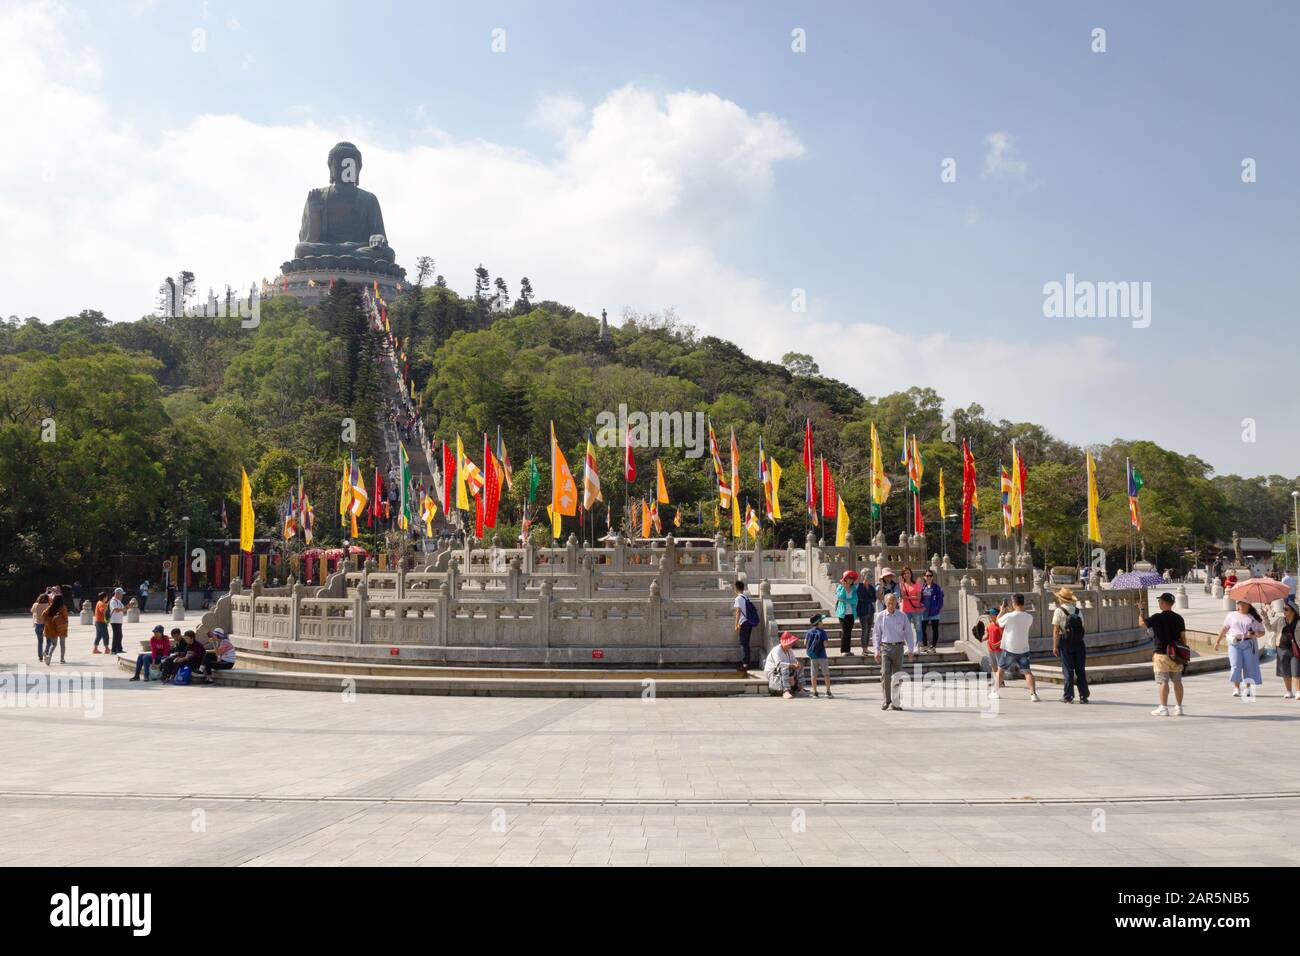 Asientourismus - Touristen im großen Lantau Buddha oder Tian Tan Sitzing buddha Statue, Ngong Ping, Lantau Island, Hong Kong Asia Stockfoto